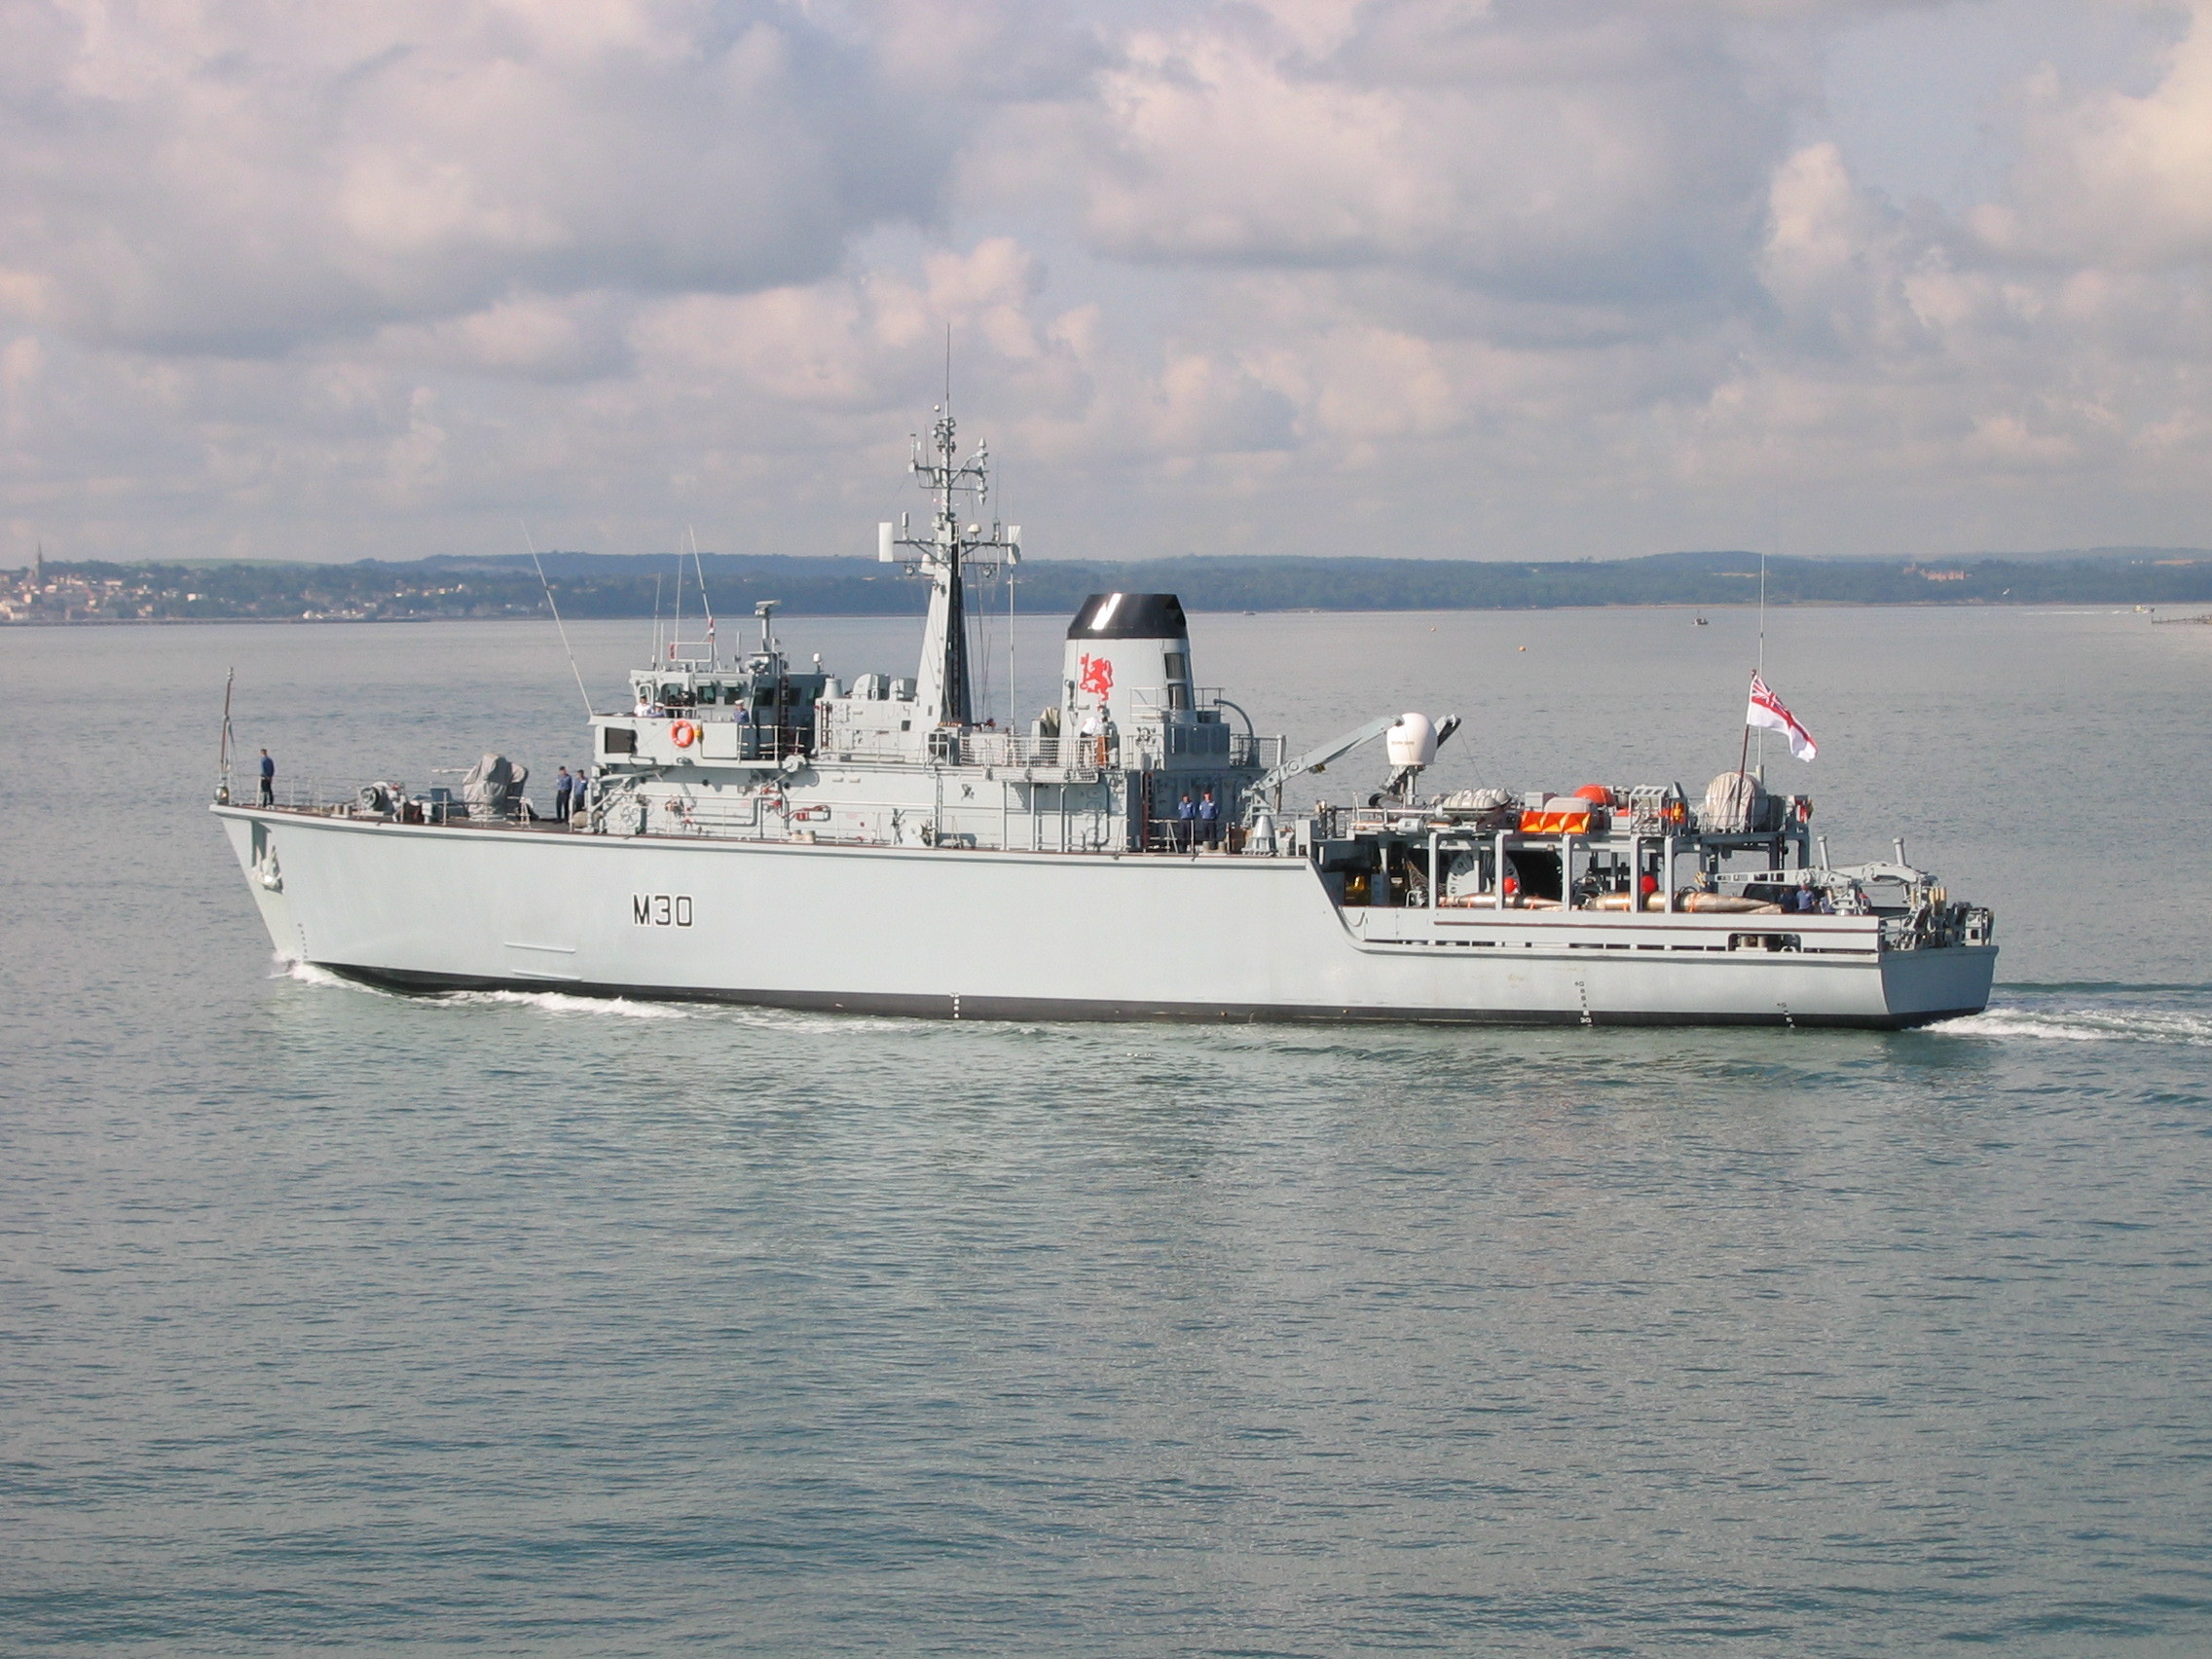 HMS Ledbury M30